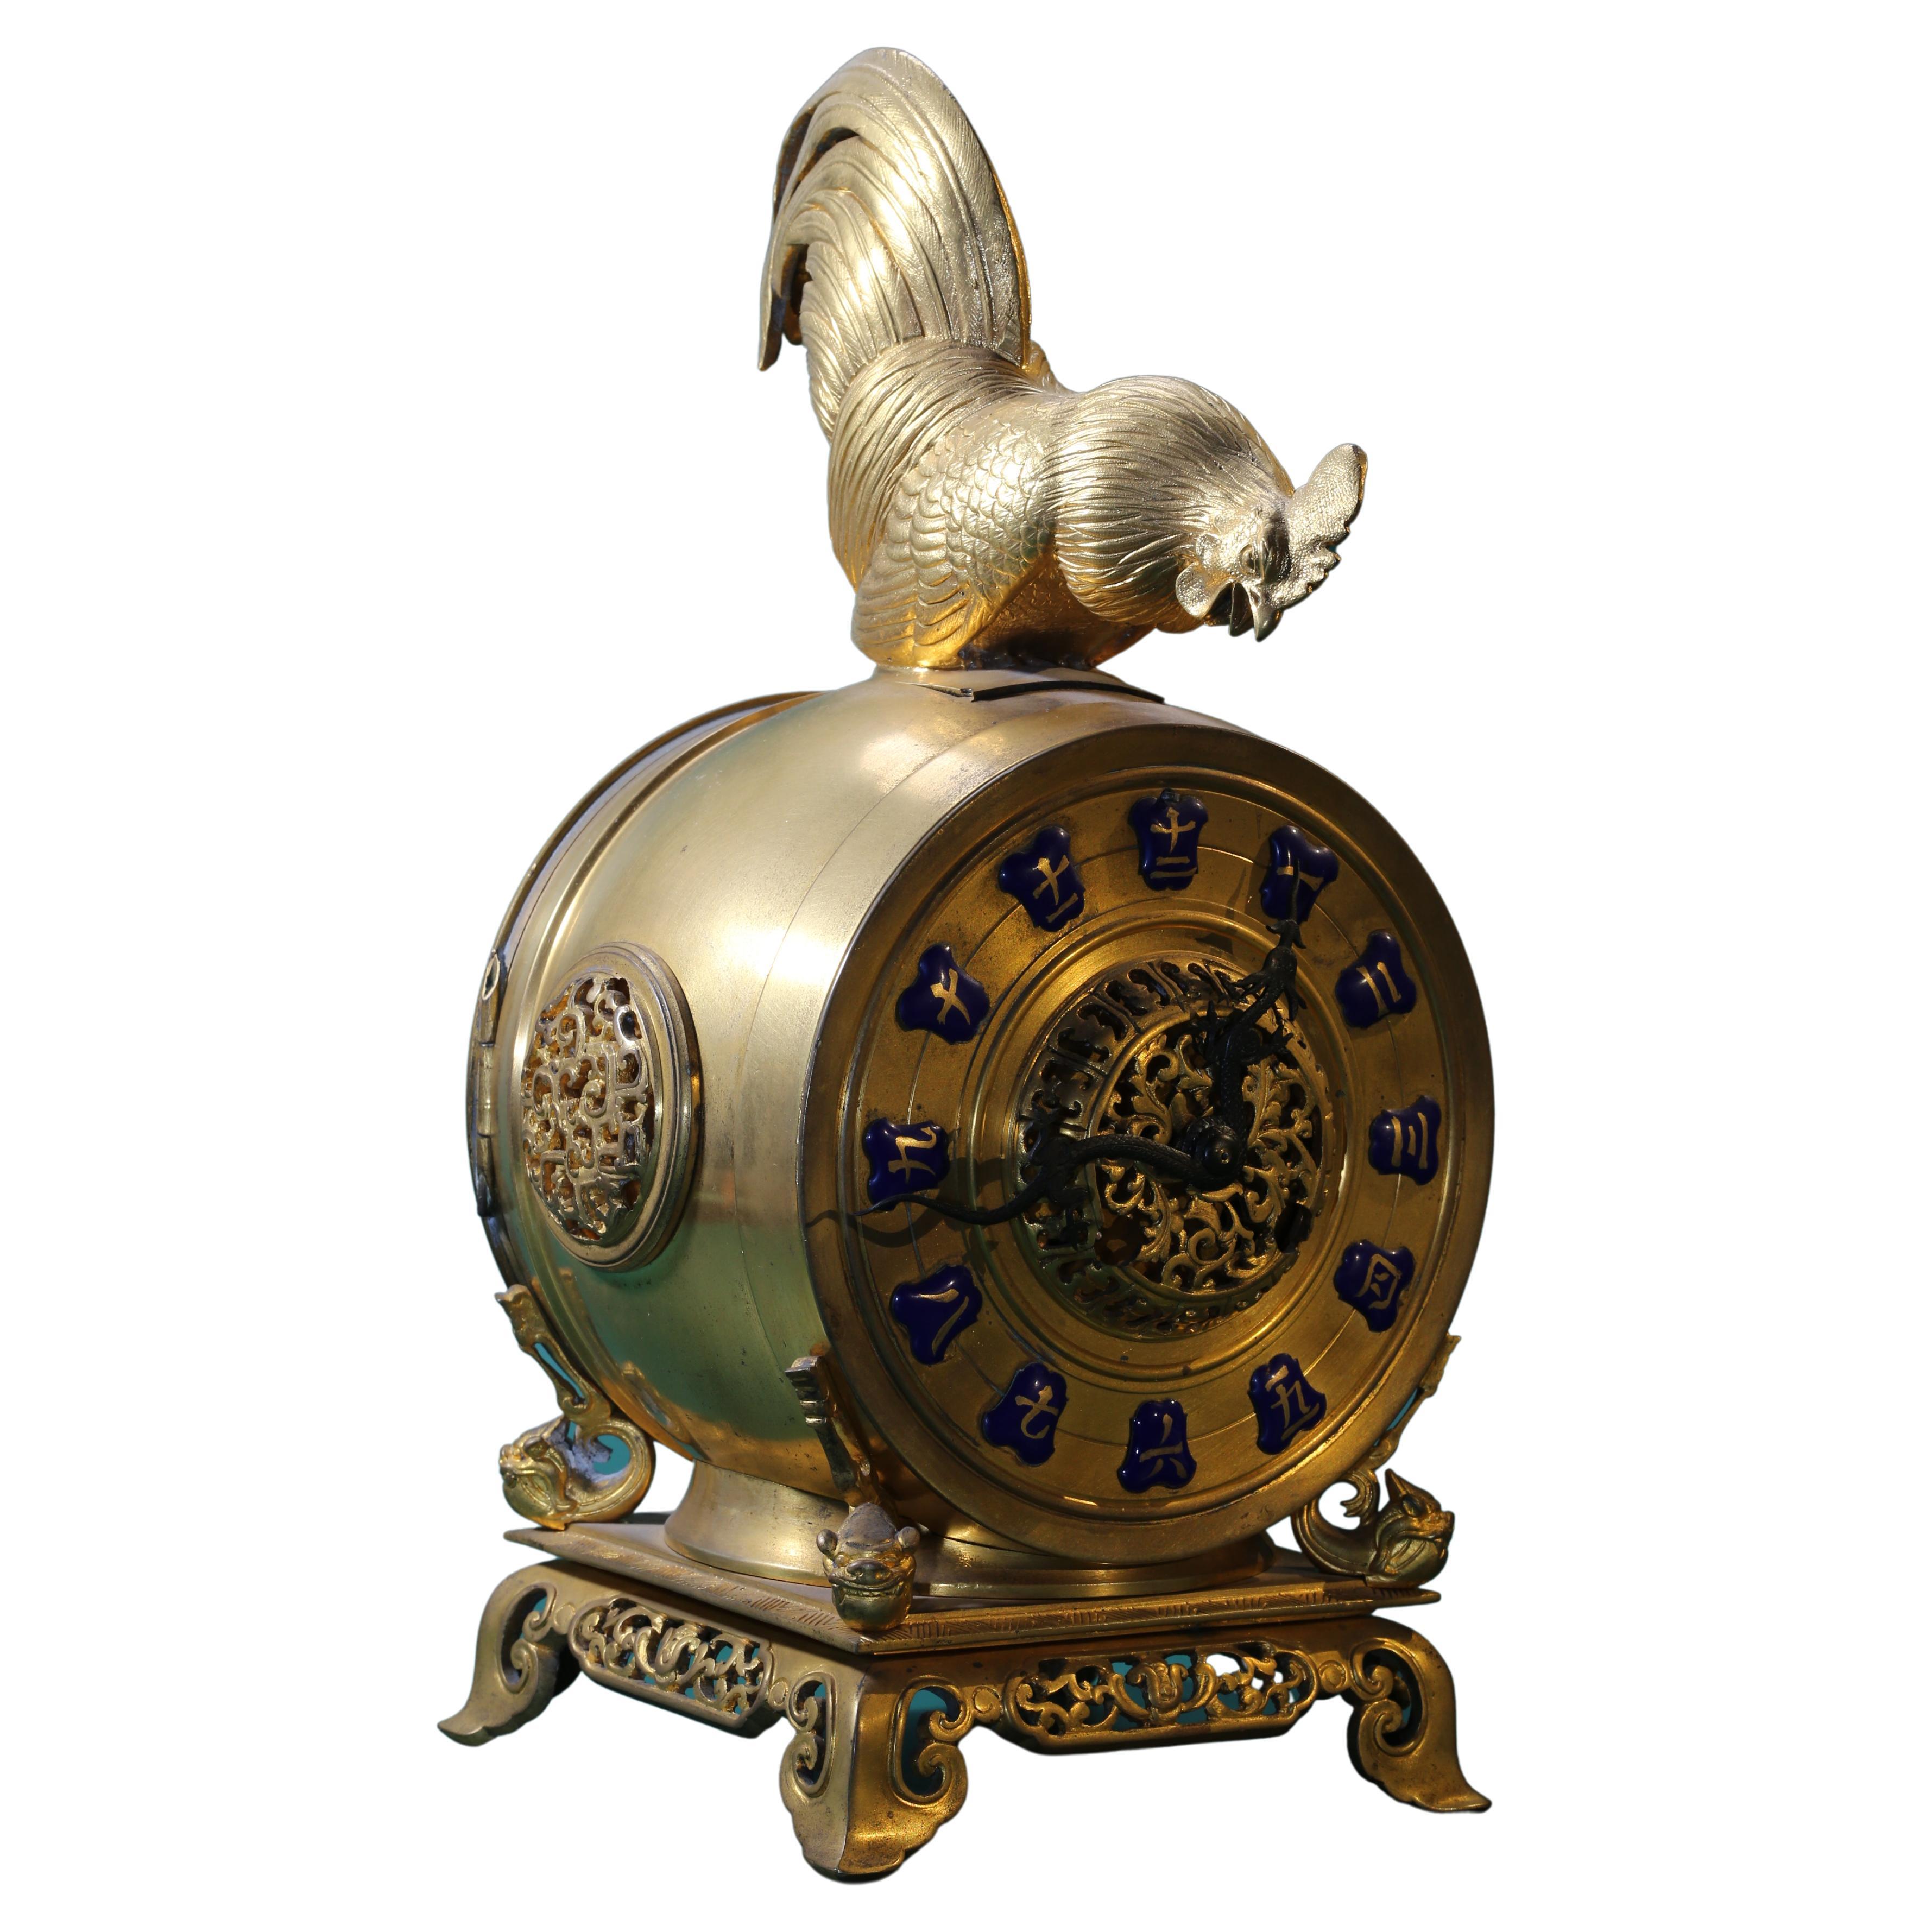 Pendule de cheminée française du 19ème siècle en bronze doré, vente aux enchères Christie's 2014